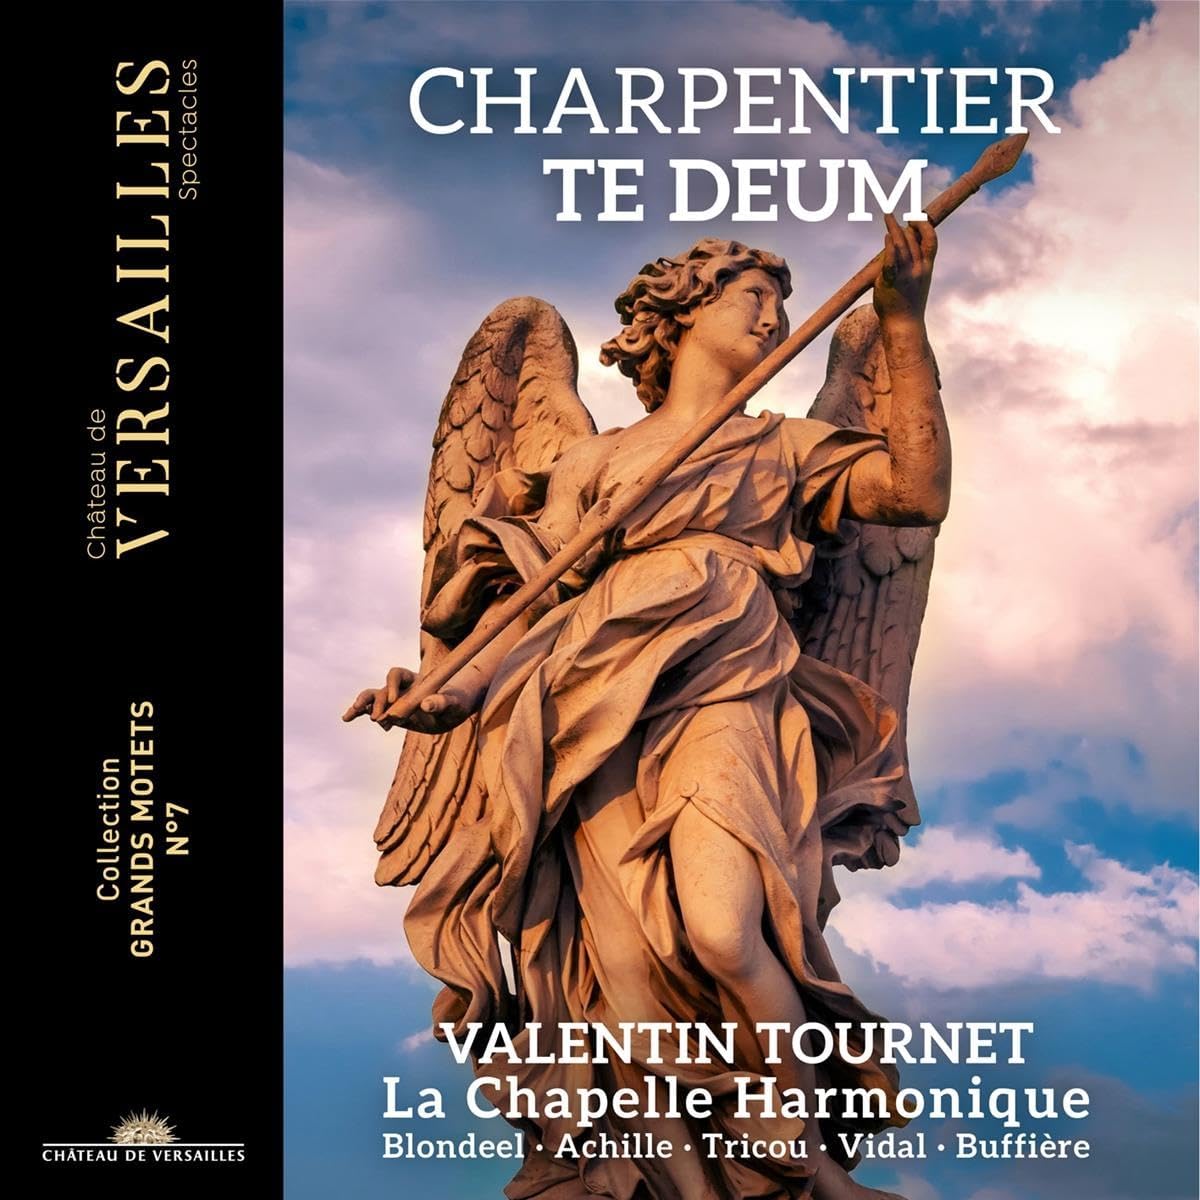 La Chapelle Harmonique Charpentier Te Deum